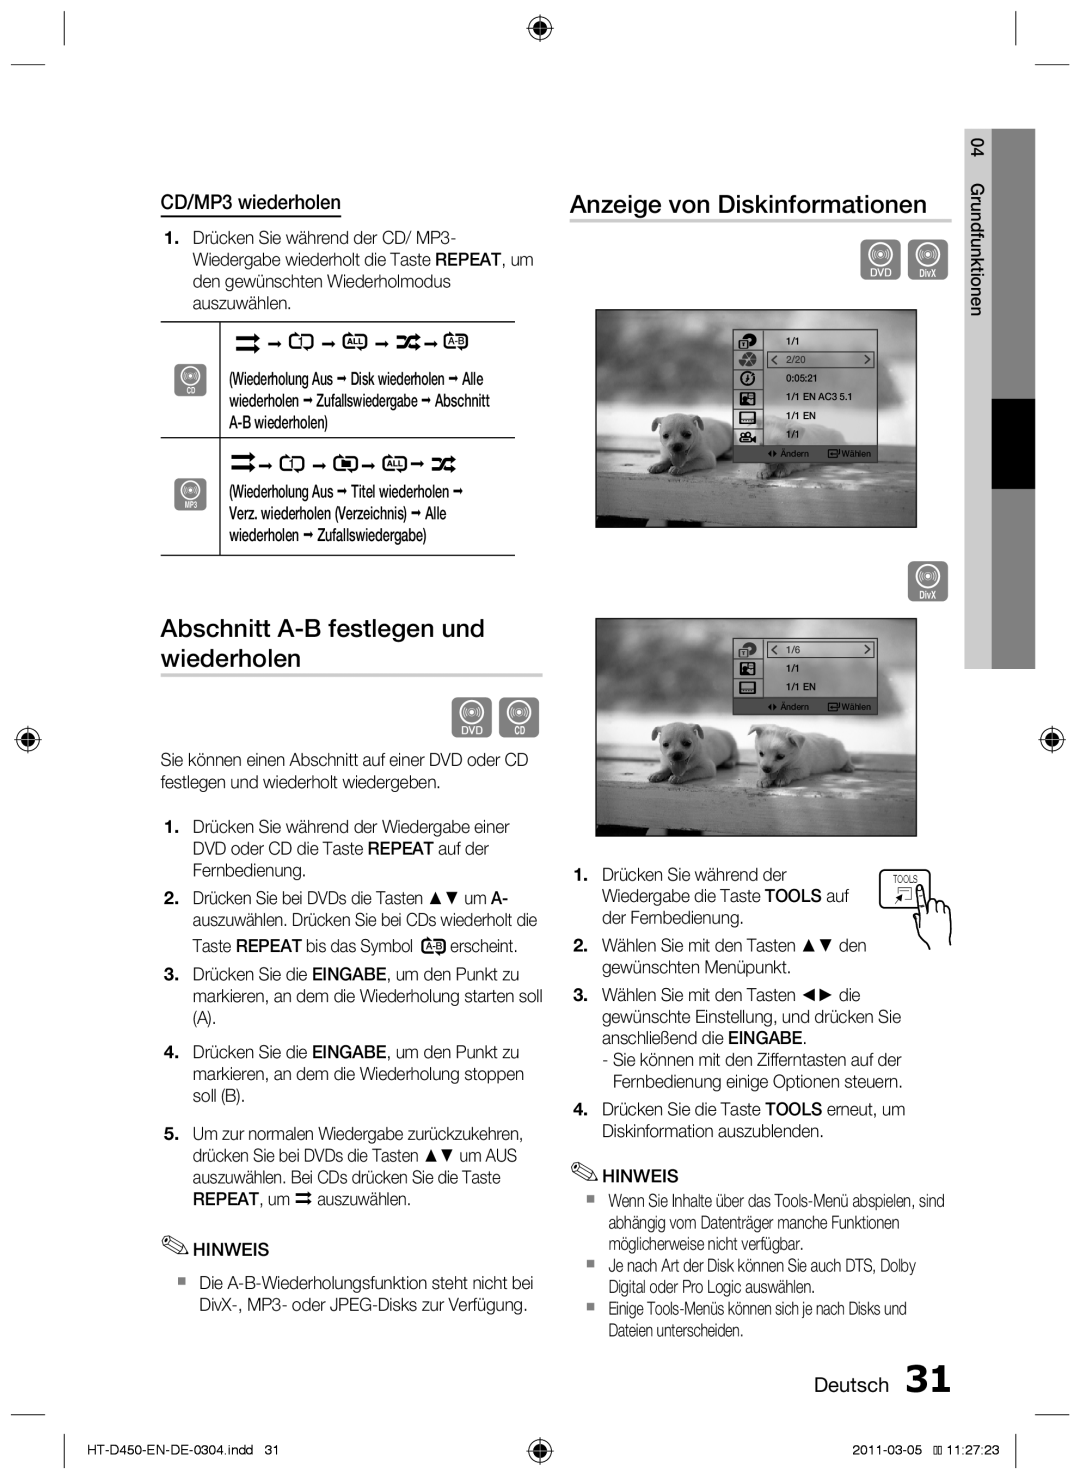 Samsung HT-D455 Abschnitt A-Bfestlegen und wiederholen, Anzeige von Diskinformationen, CD/MP3 wiederholen, Deutsch 